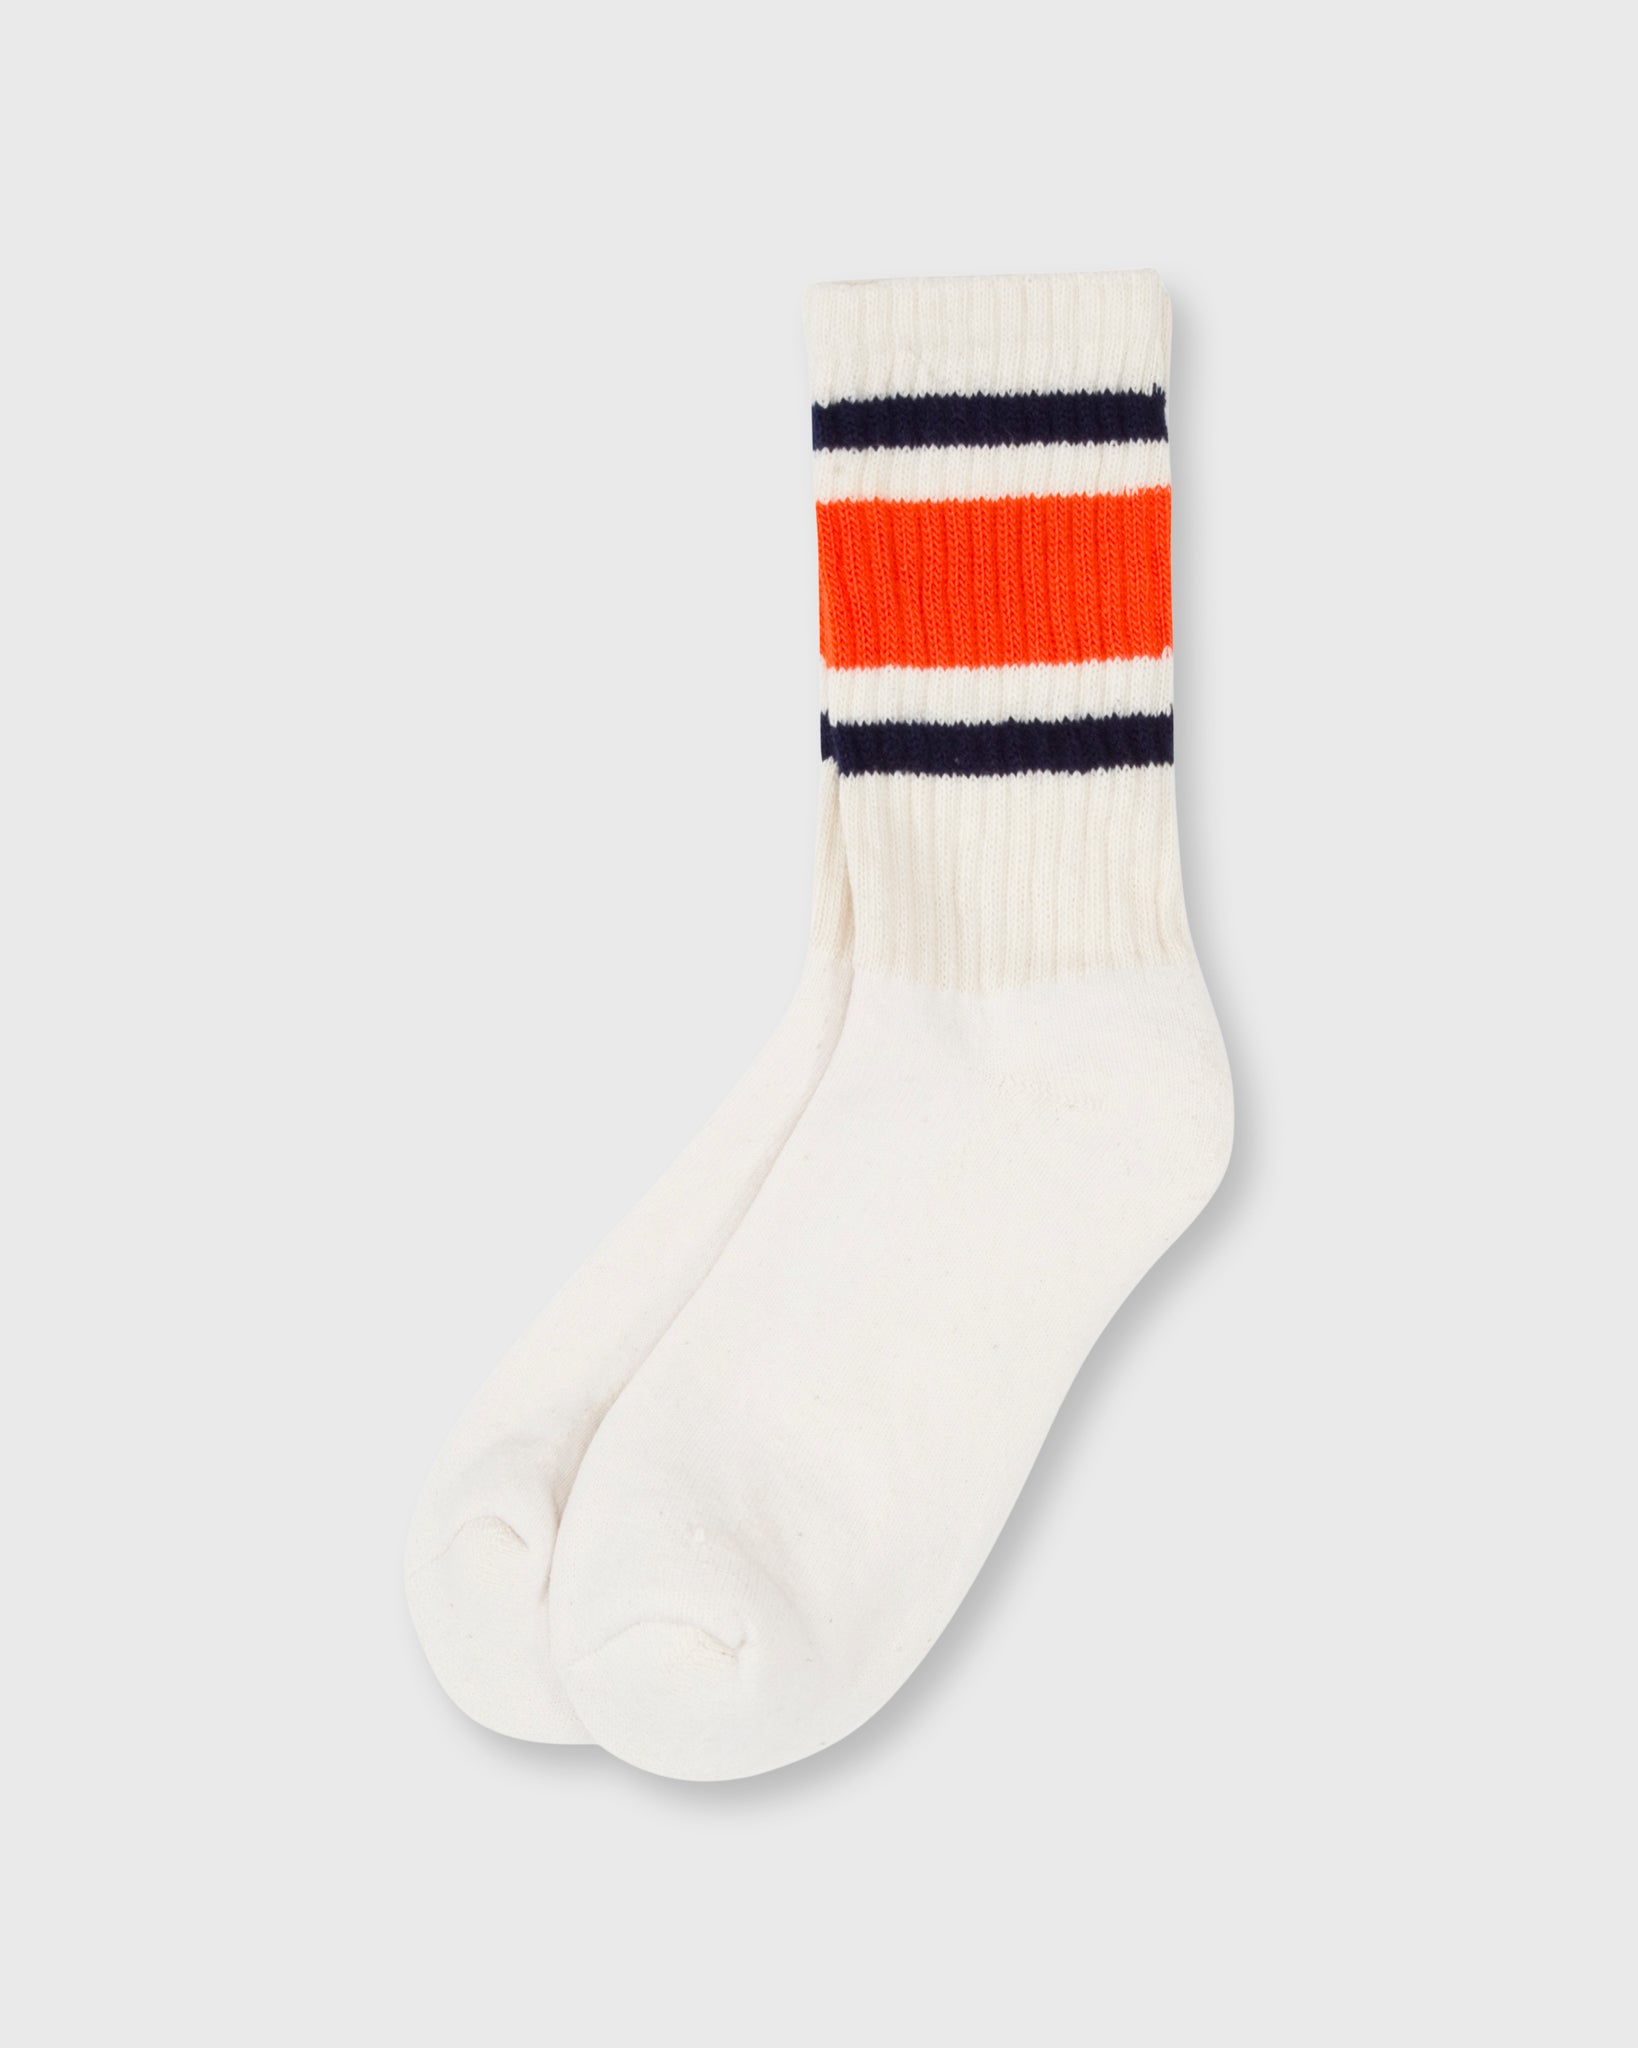 Retro Stripe Socks in Navy/Orange